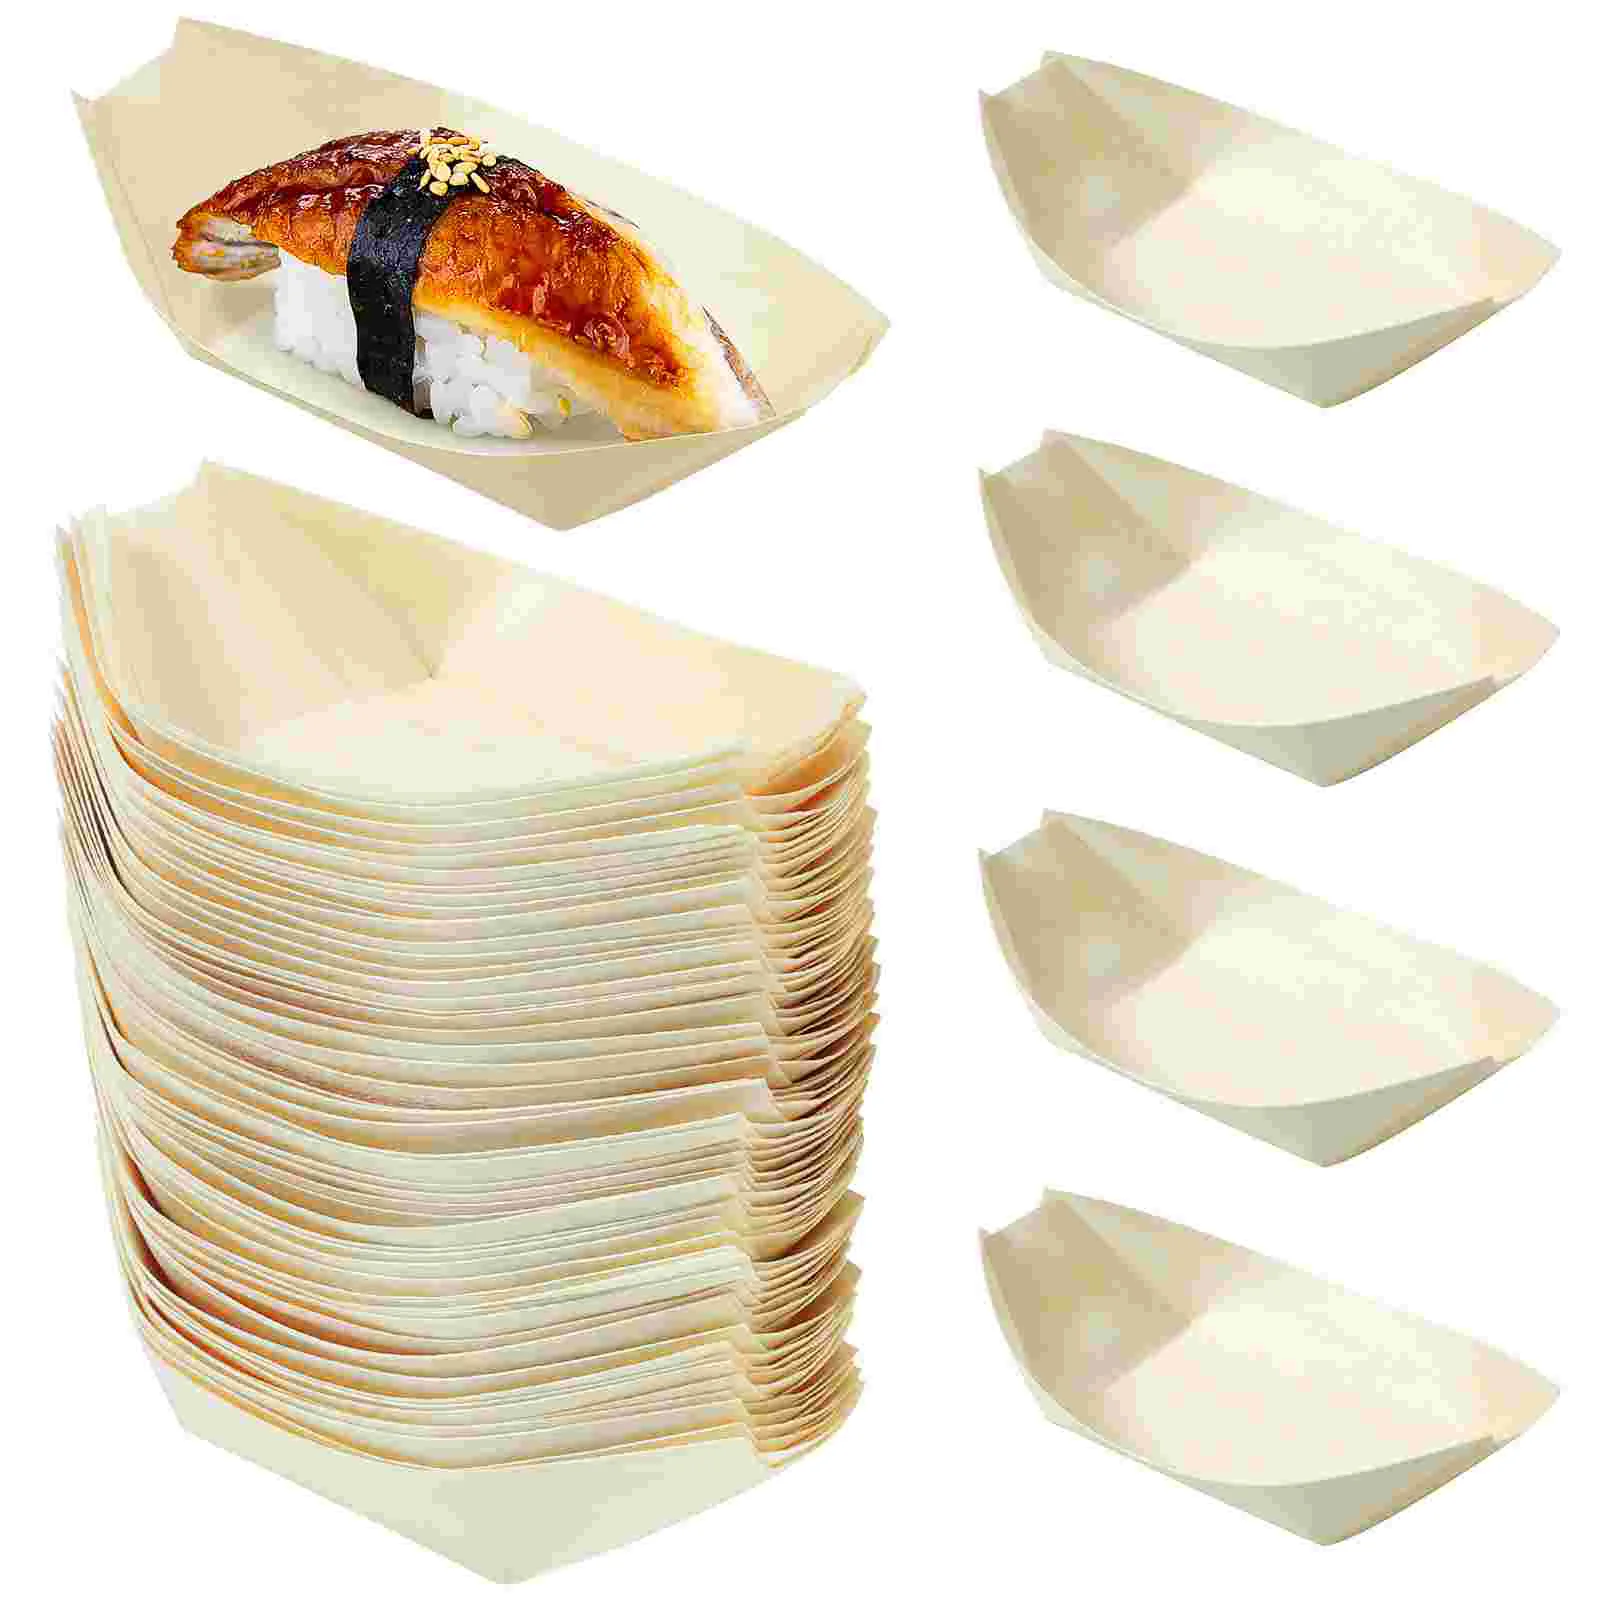 

100 шт. одноразовые тарелки для суши, поднос для суши из натурального дерева, тарелки для дома, ресторана